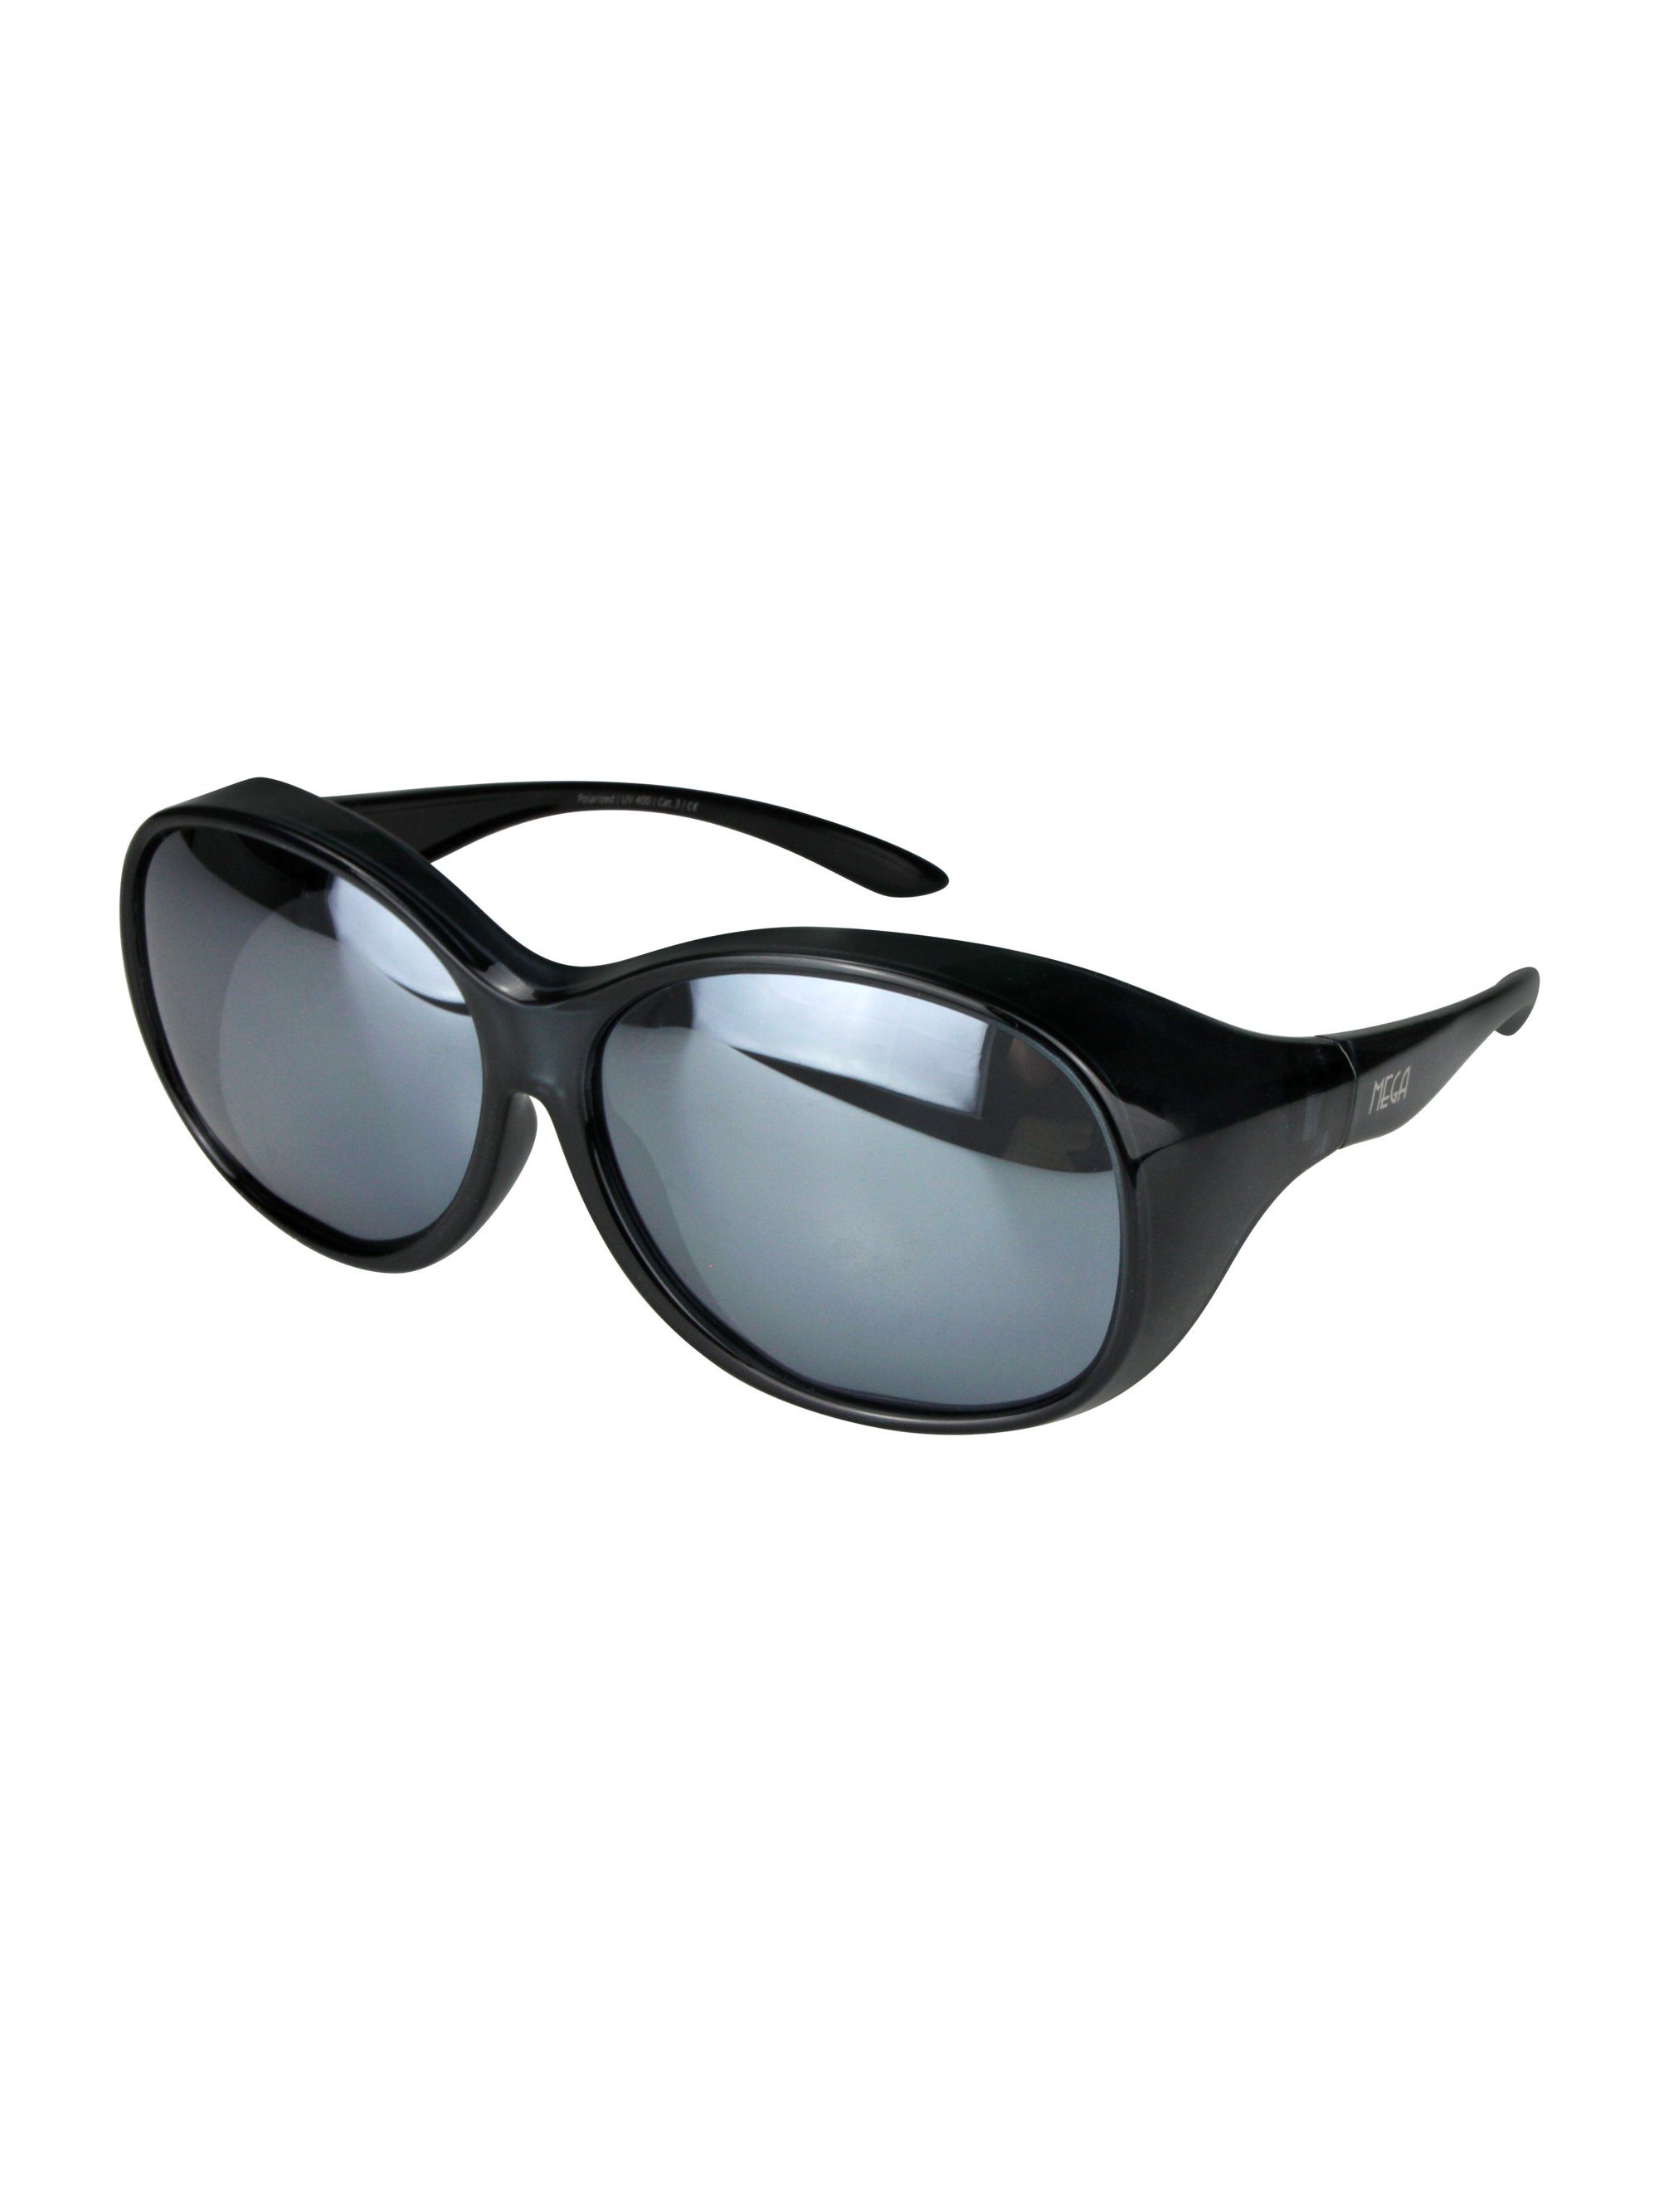 ActiveSol SUNGLASSES Sonnenbrille Überziehsonnenbrille Damen MEGA (inklusive Schiebebox und Brillenputztuch) Vintage Stil Schwarz verspiegelt